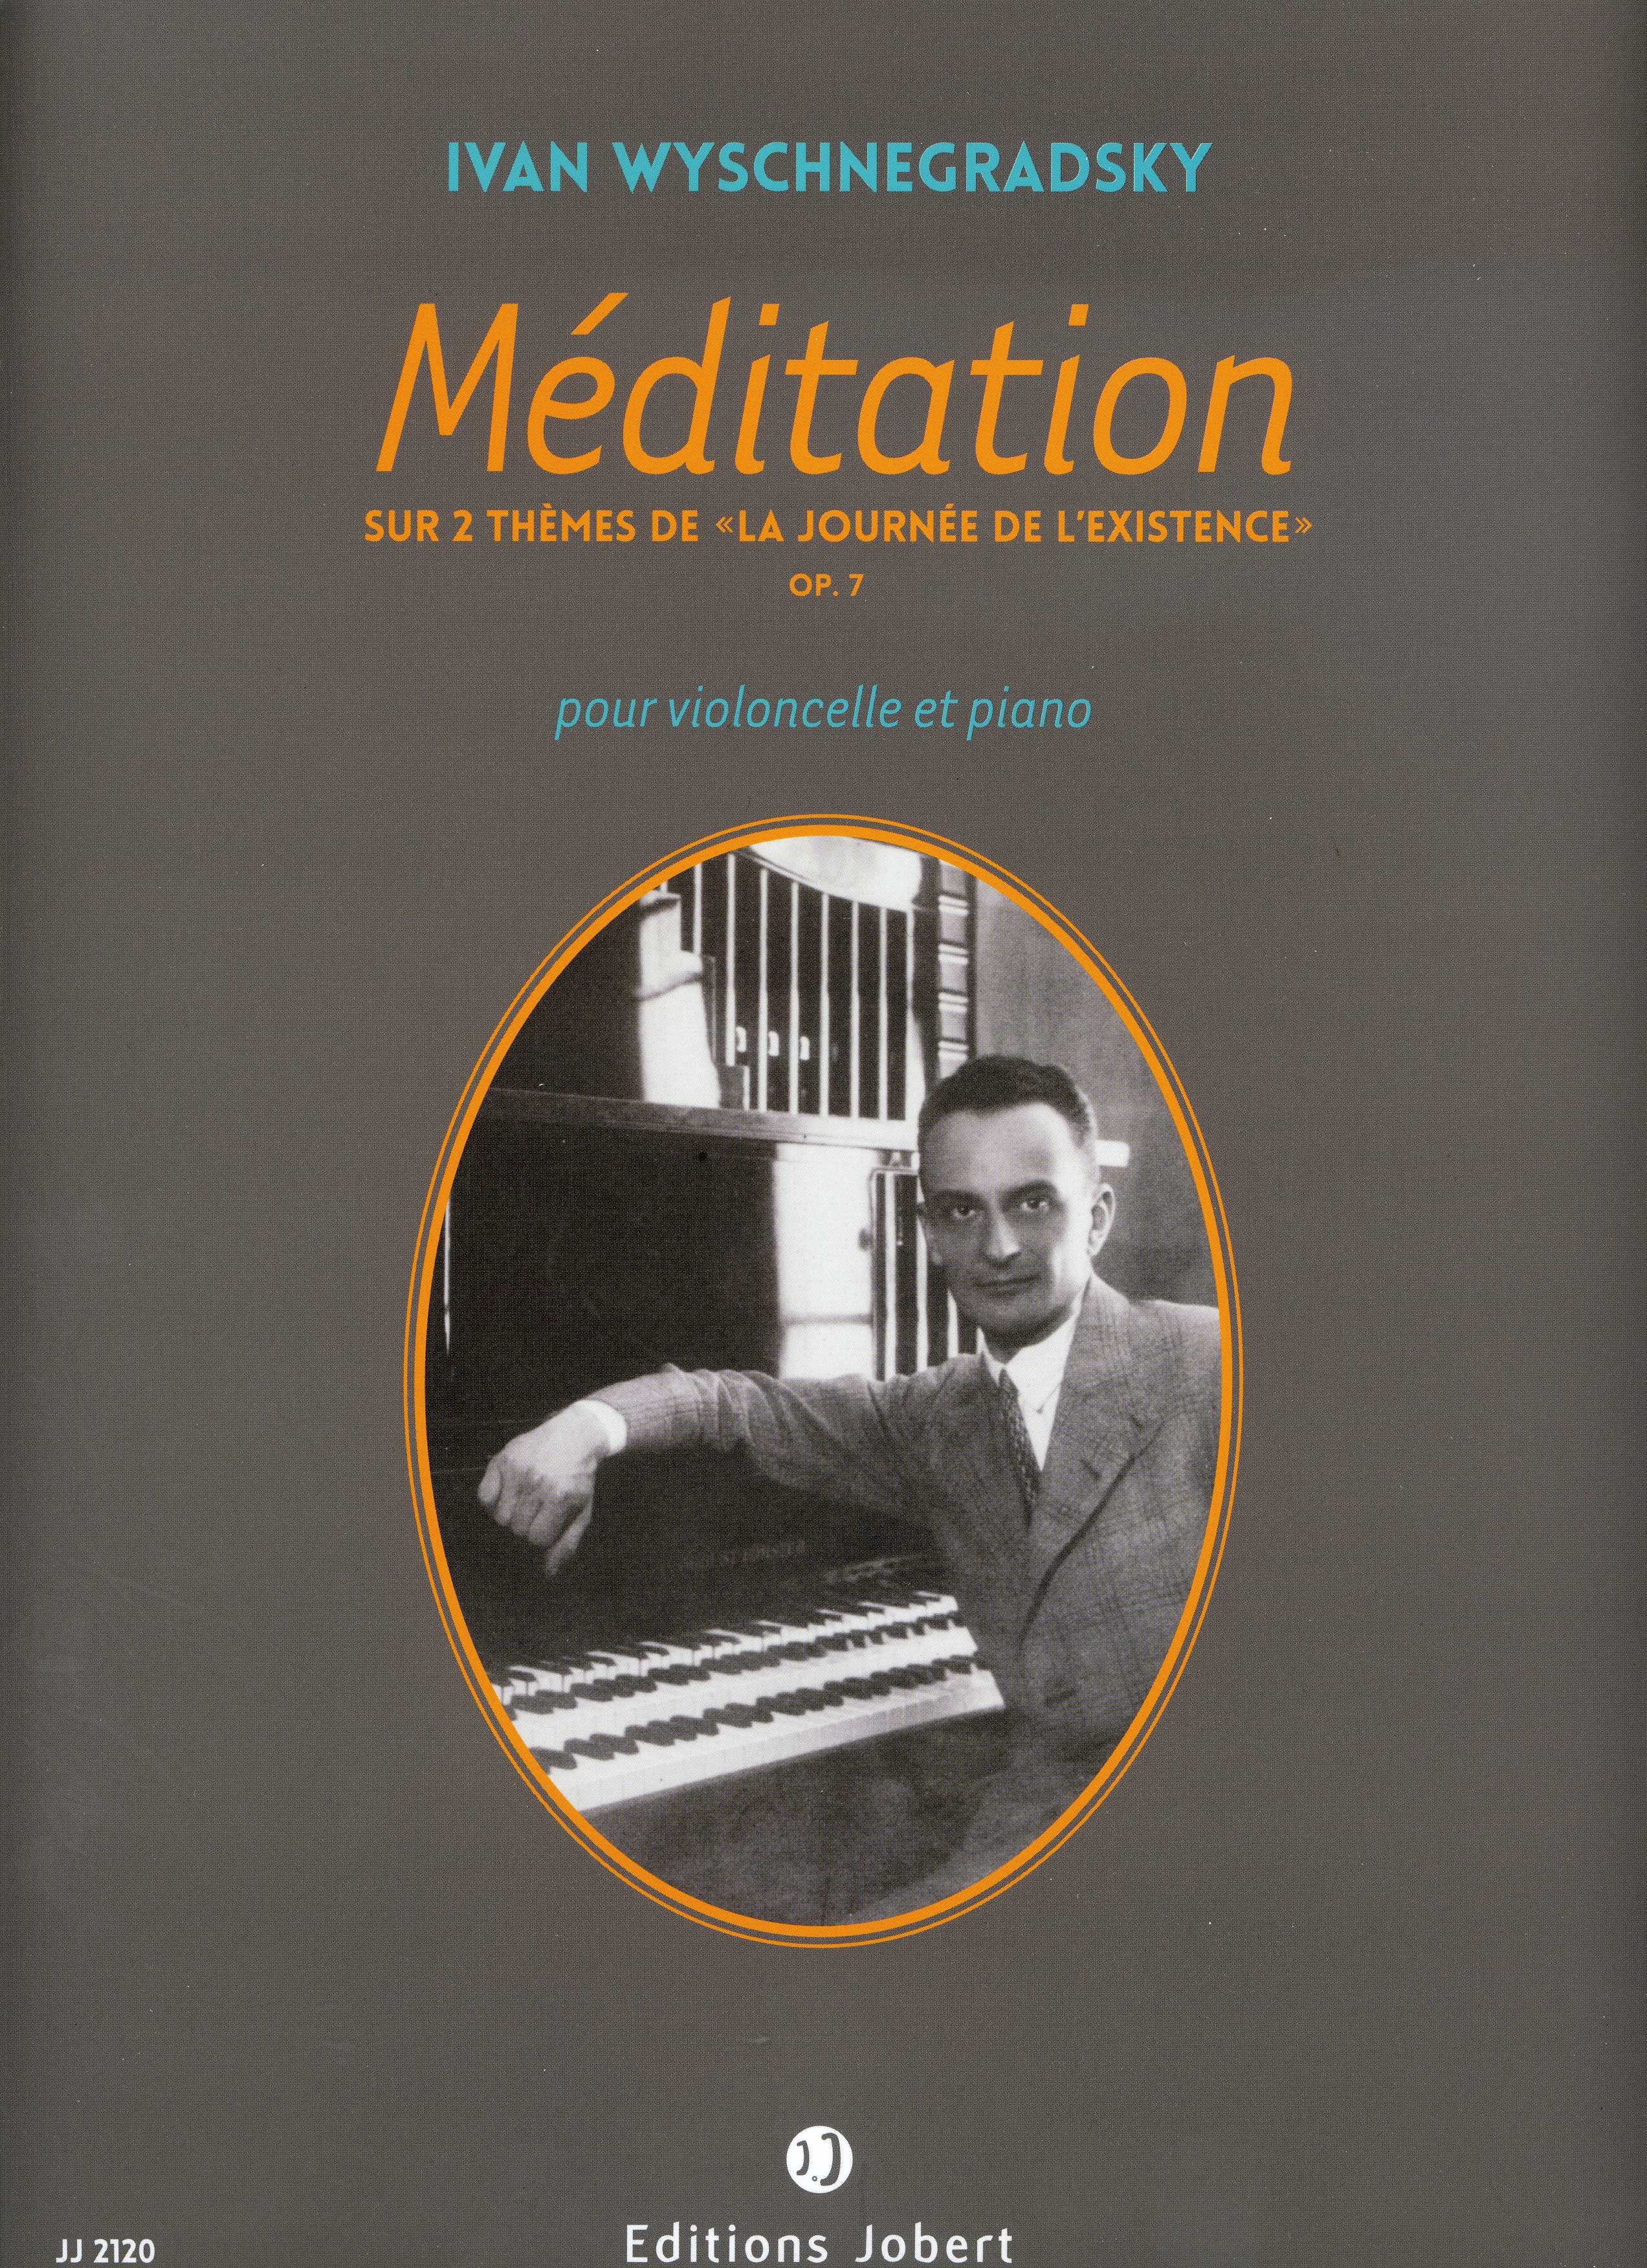 Meditation Sur 2 Themes De La Journee De L'Existence Op 7